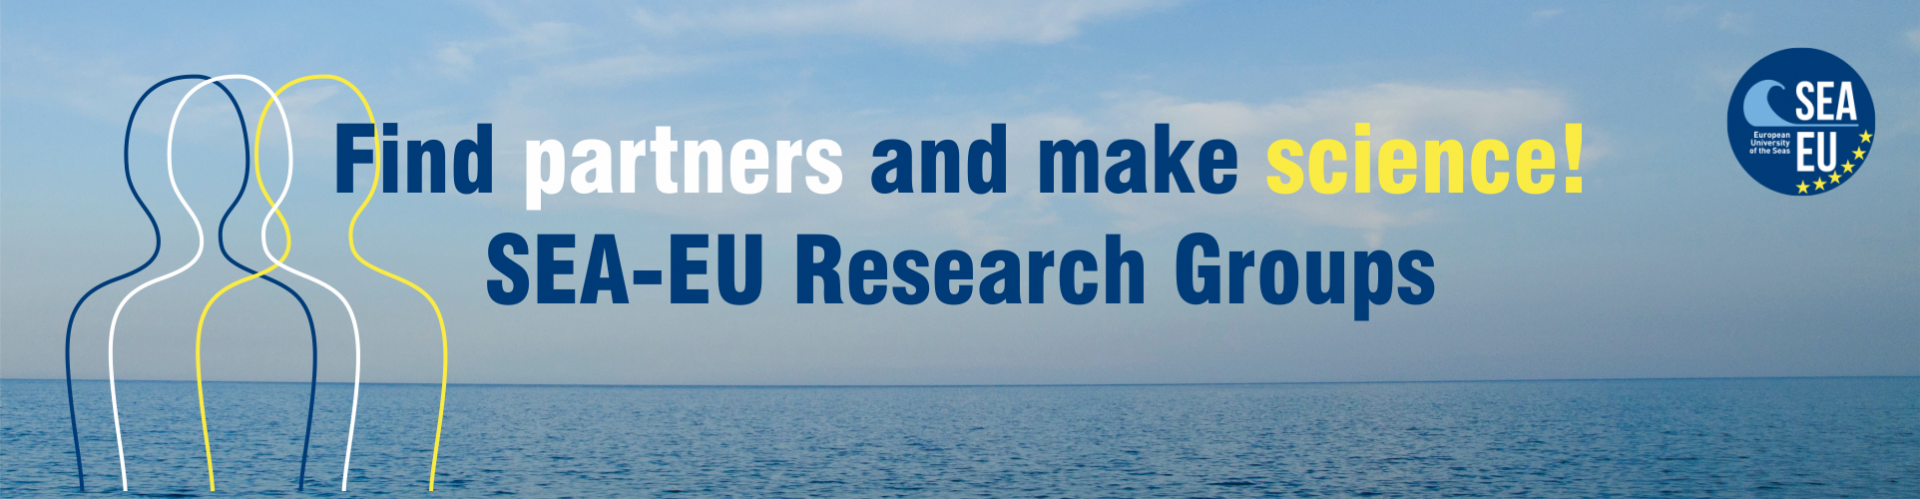 Grupy badawcze SEA-EU - dowiedz się więcej!